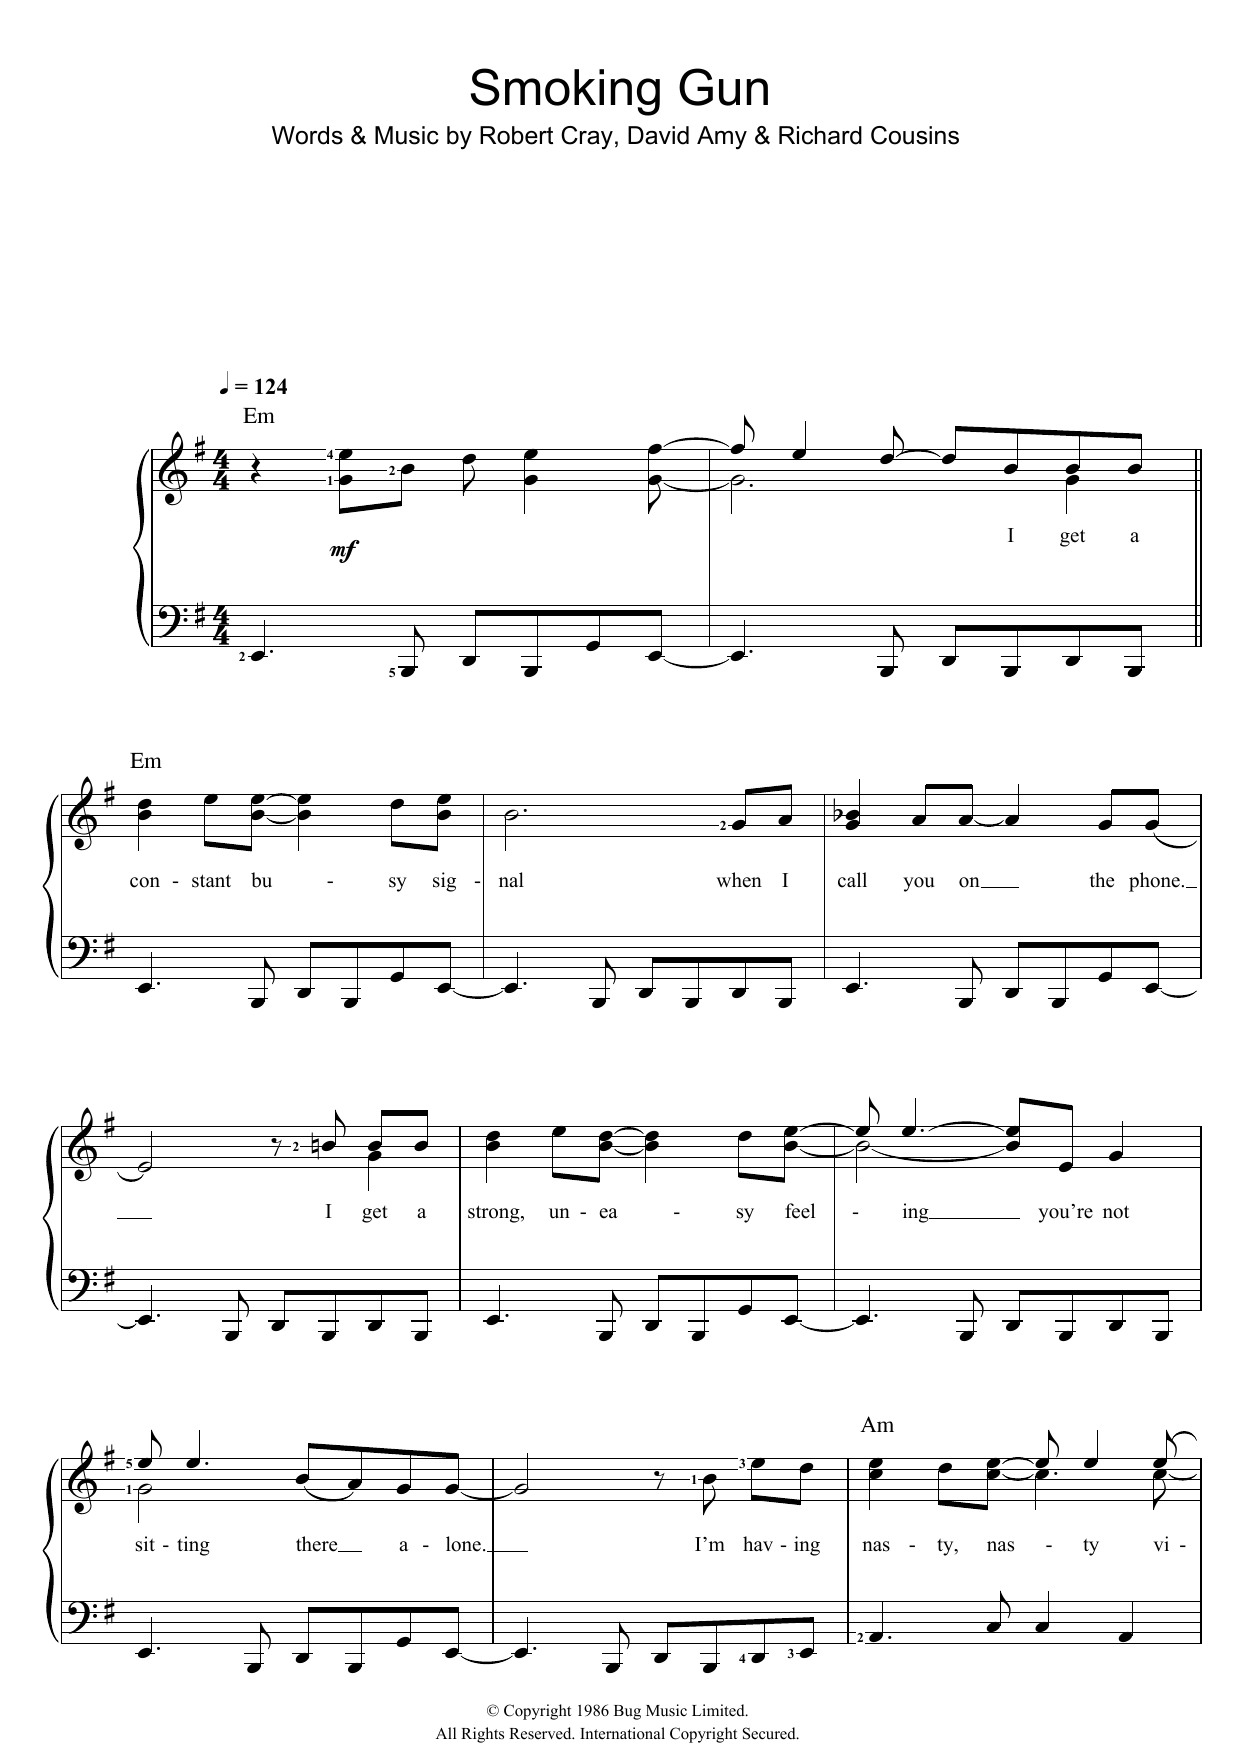 Robert Cray Smoking Gun Sheet Music Notes & Chords for Lyrics & Chords - Download or Print PDF